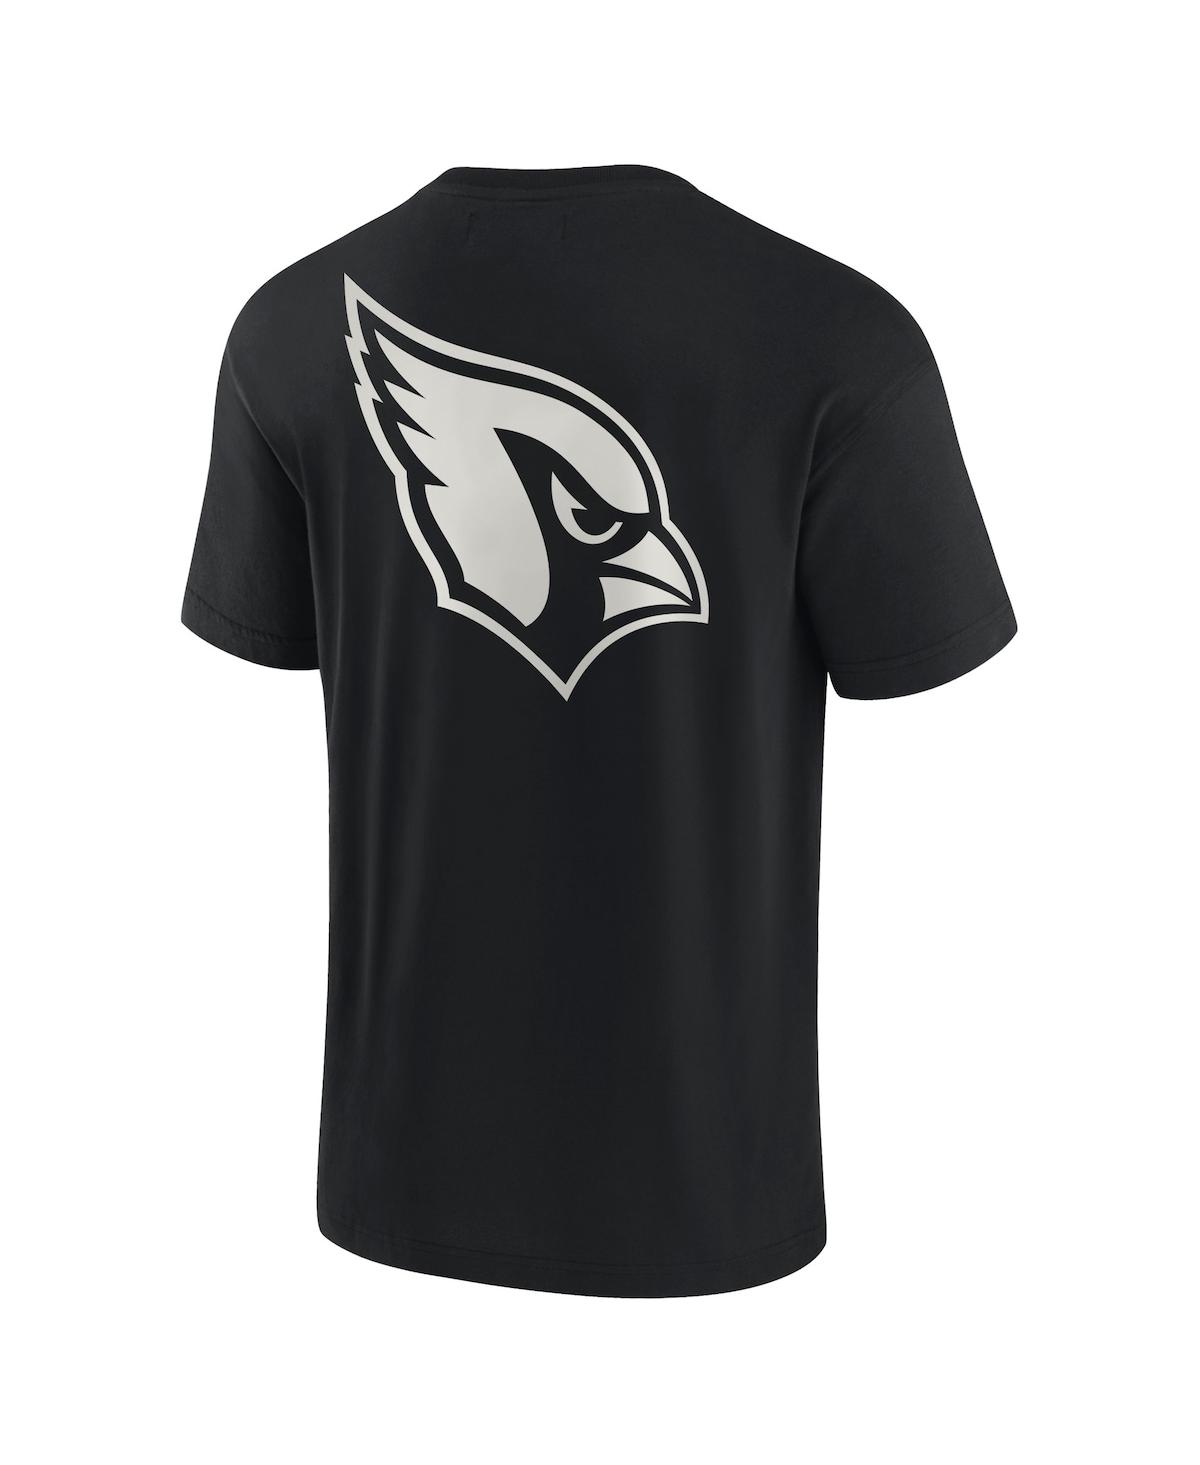 Shop Fanatics Signature Men's And Women's  Black Arizona Cardinals Super Soft Short Sleeve T-shirt